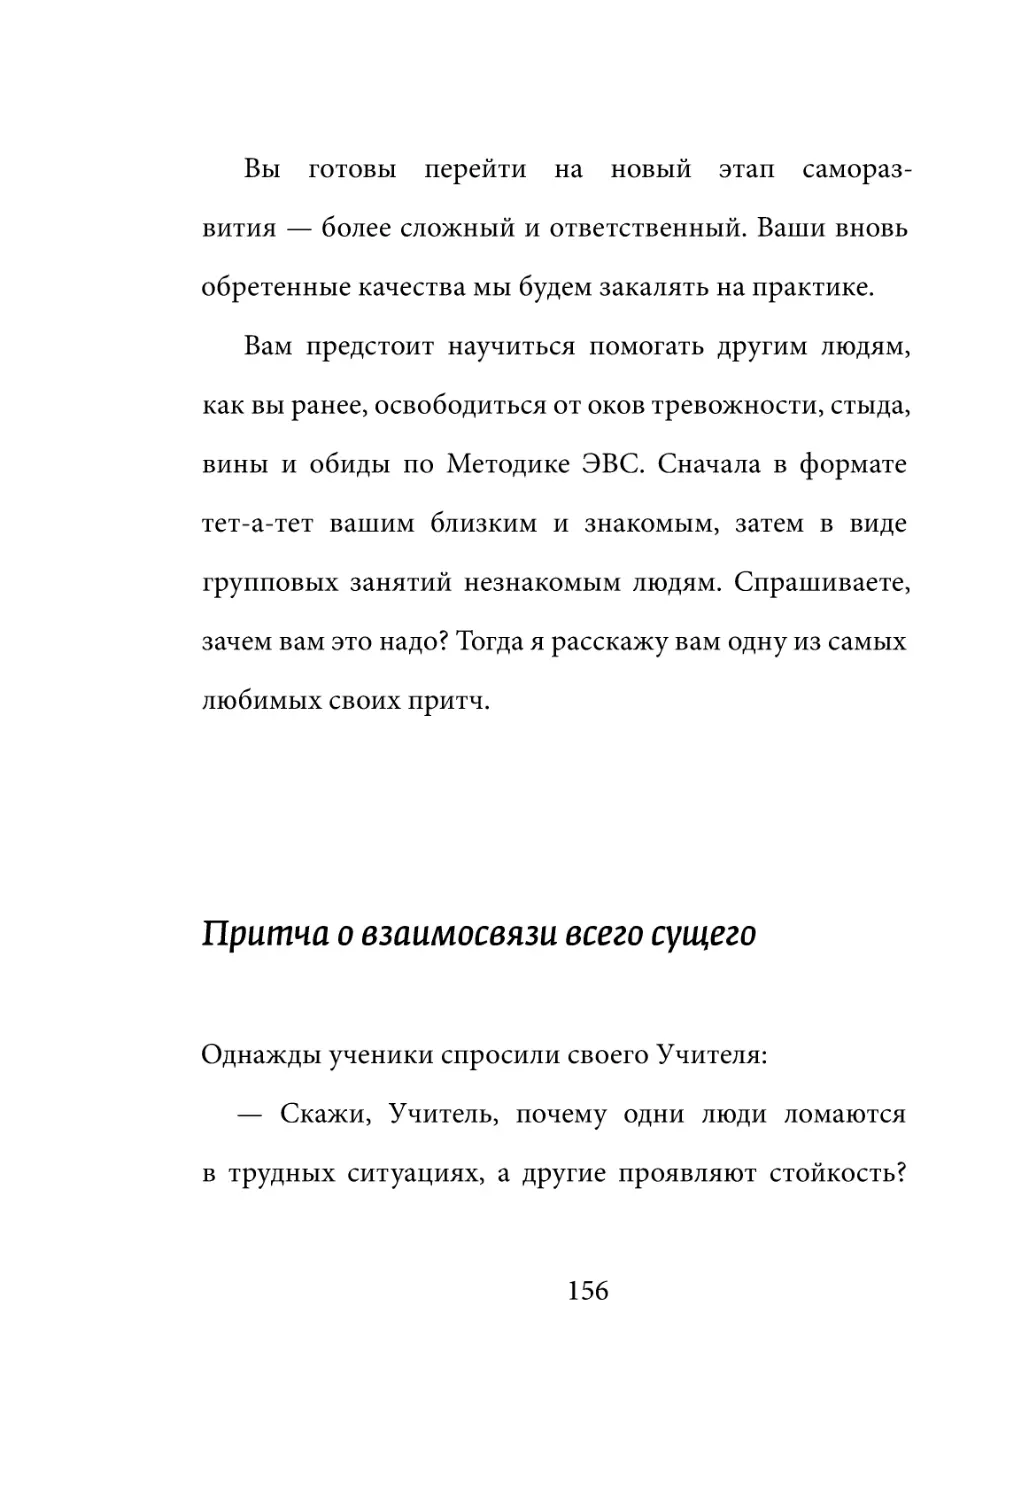 Sergey_Filippov_Dnevnik_samorazvitia_Evolyutsia_Vnutrennego_Sostoyania_156.pdf (p.156)